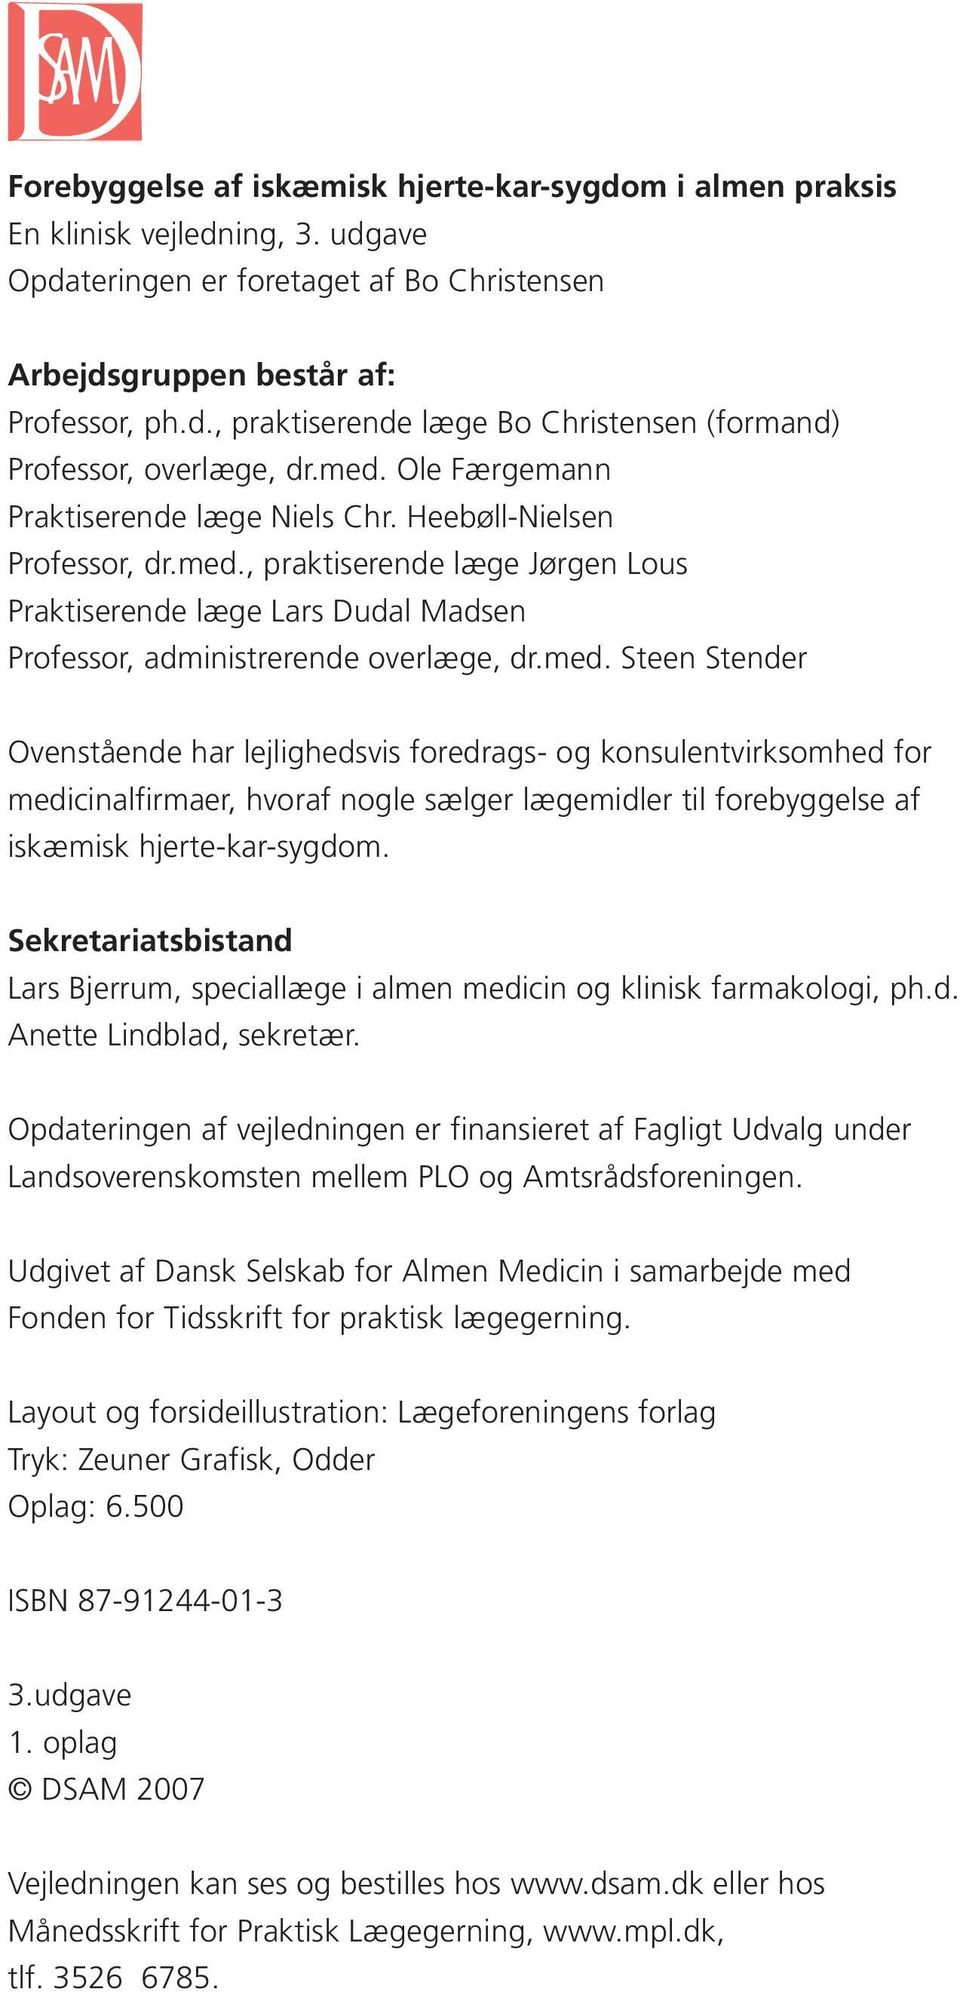 Sekretariatsbistand Lars Bjerrum, speciallæge i almen medicin og klinisk farmakologi, ph.d. Anette Lindblad, sekretær.